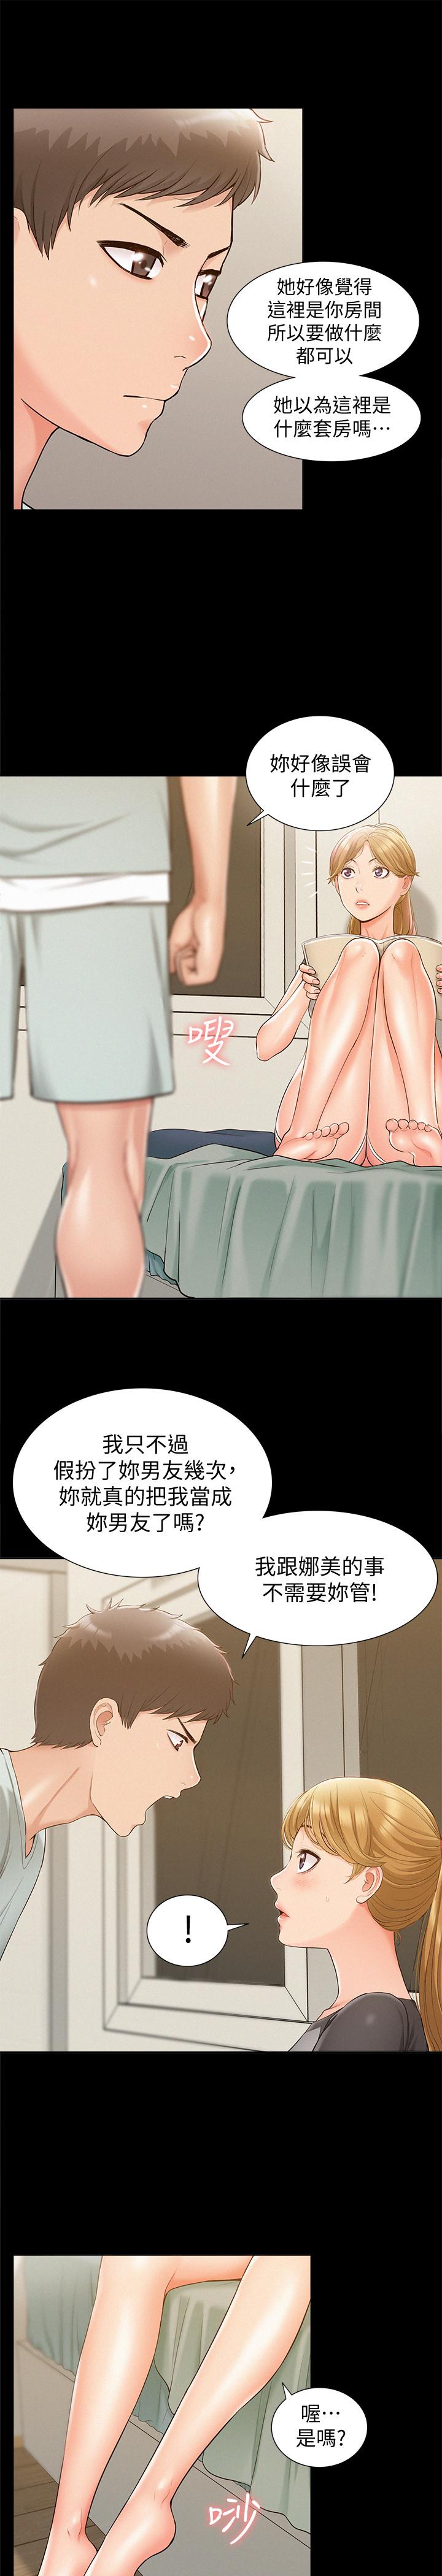 韩国污漫画 難言之隱 第14话-因嫉妒而躁动的身体 22